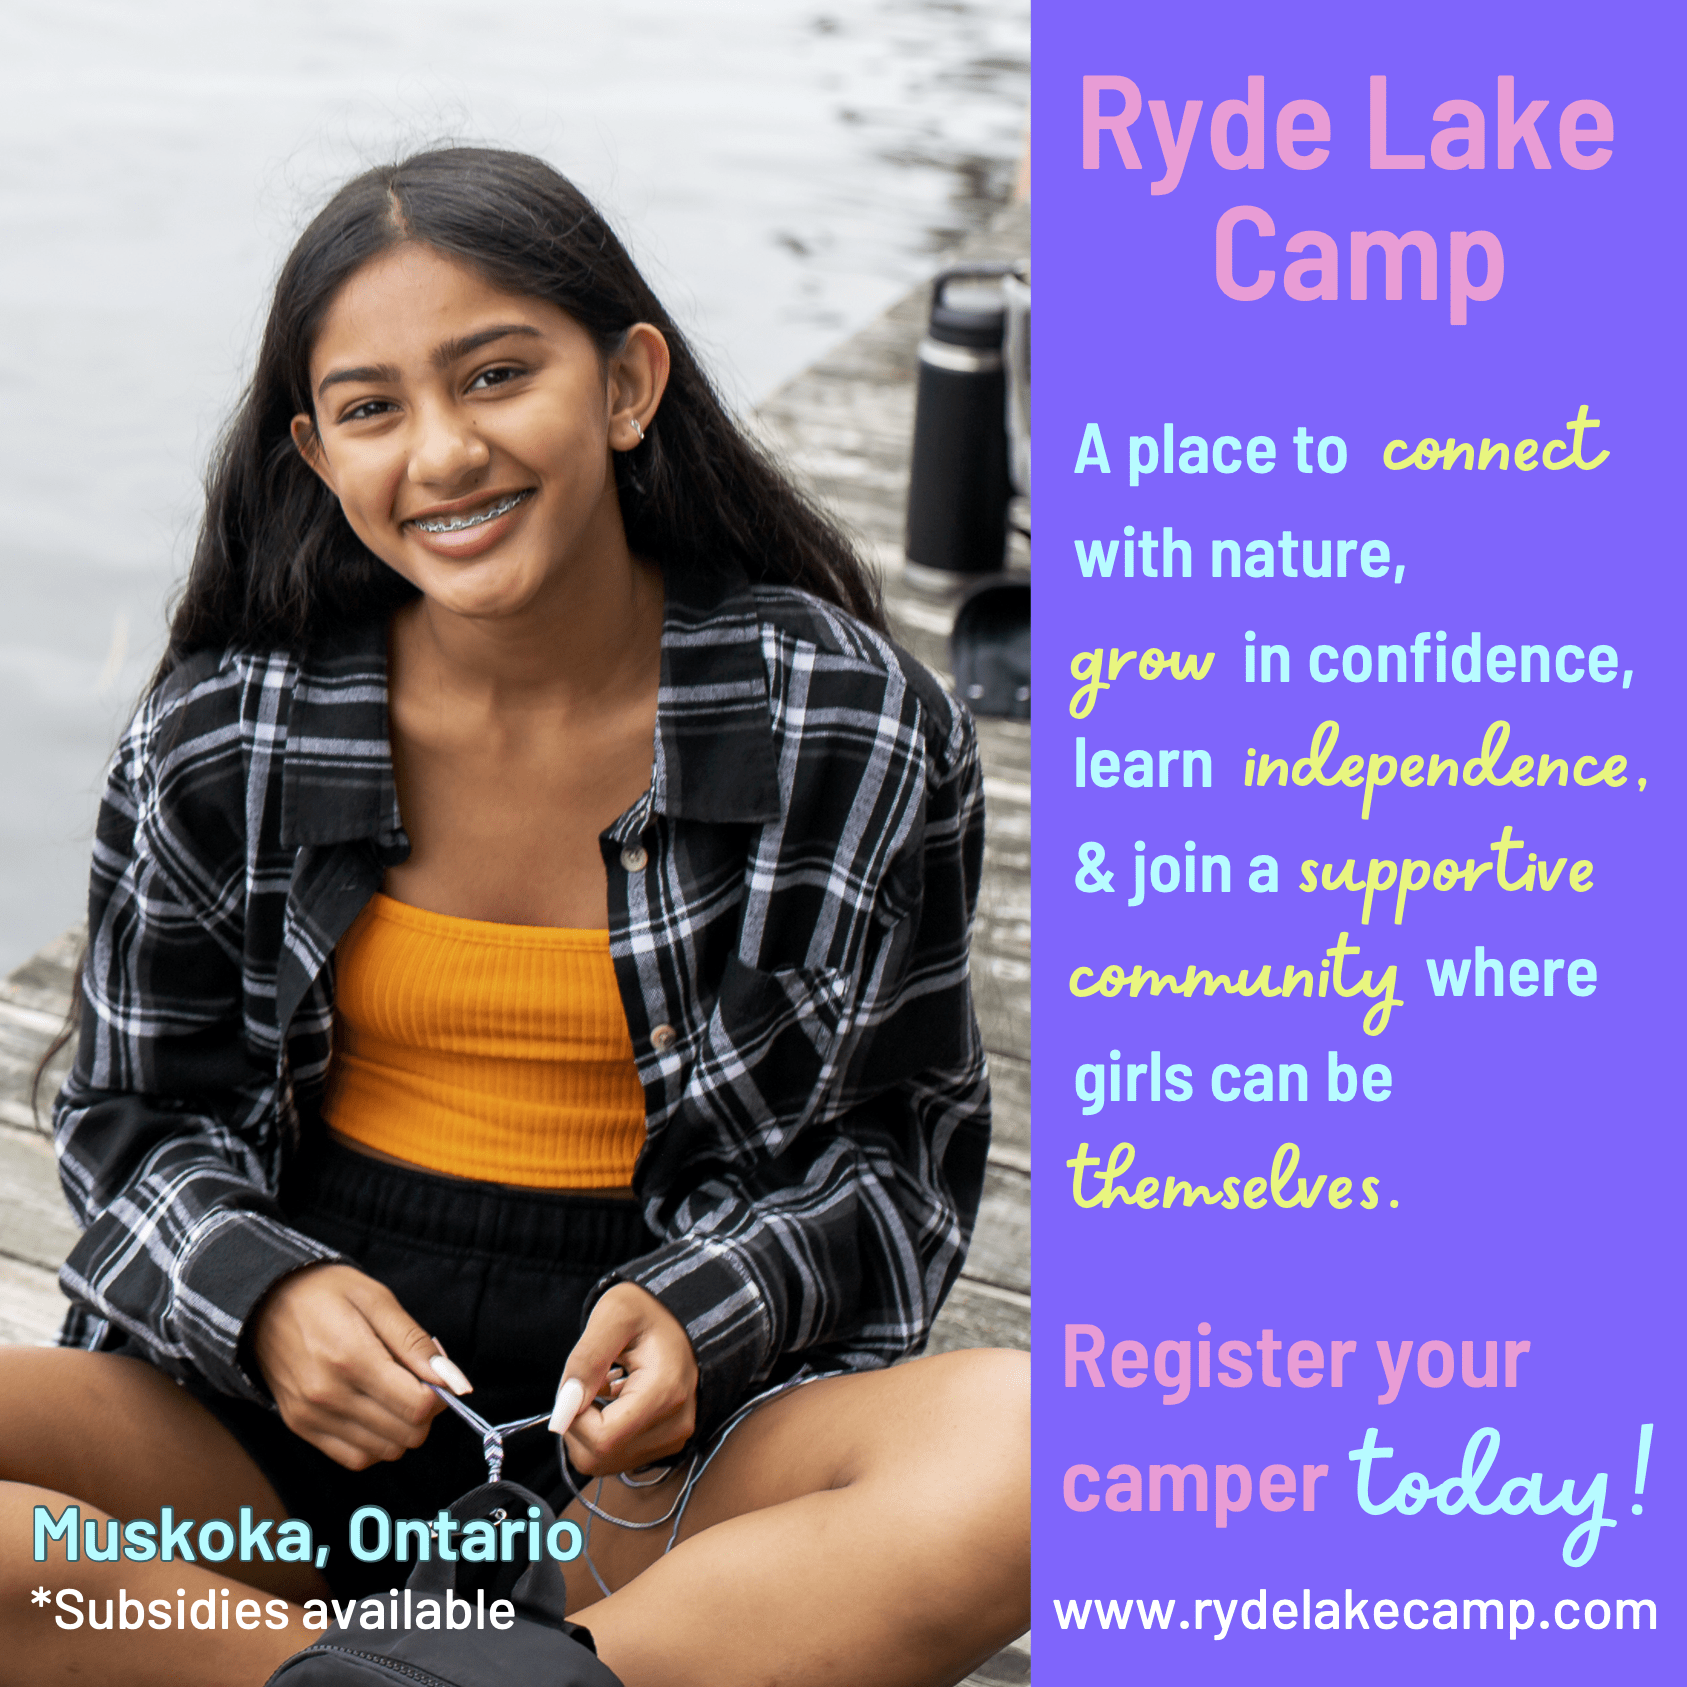 Camp du lac Ryde (Plaisir en famille à Toronto)